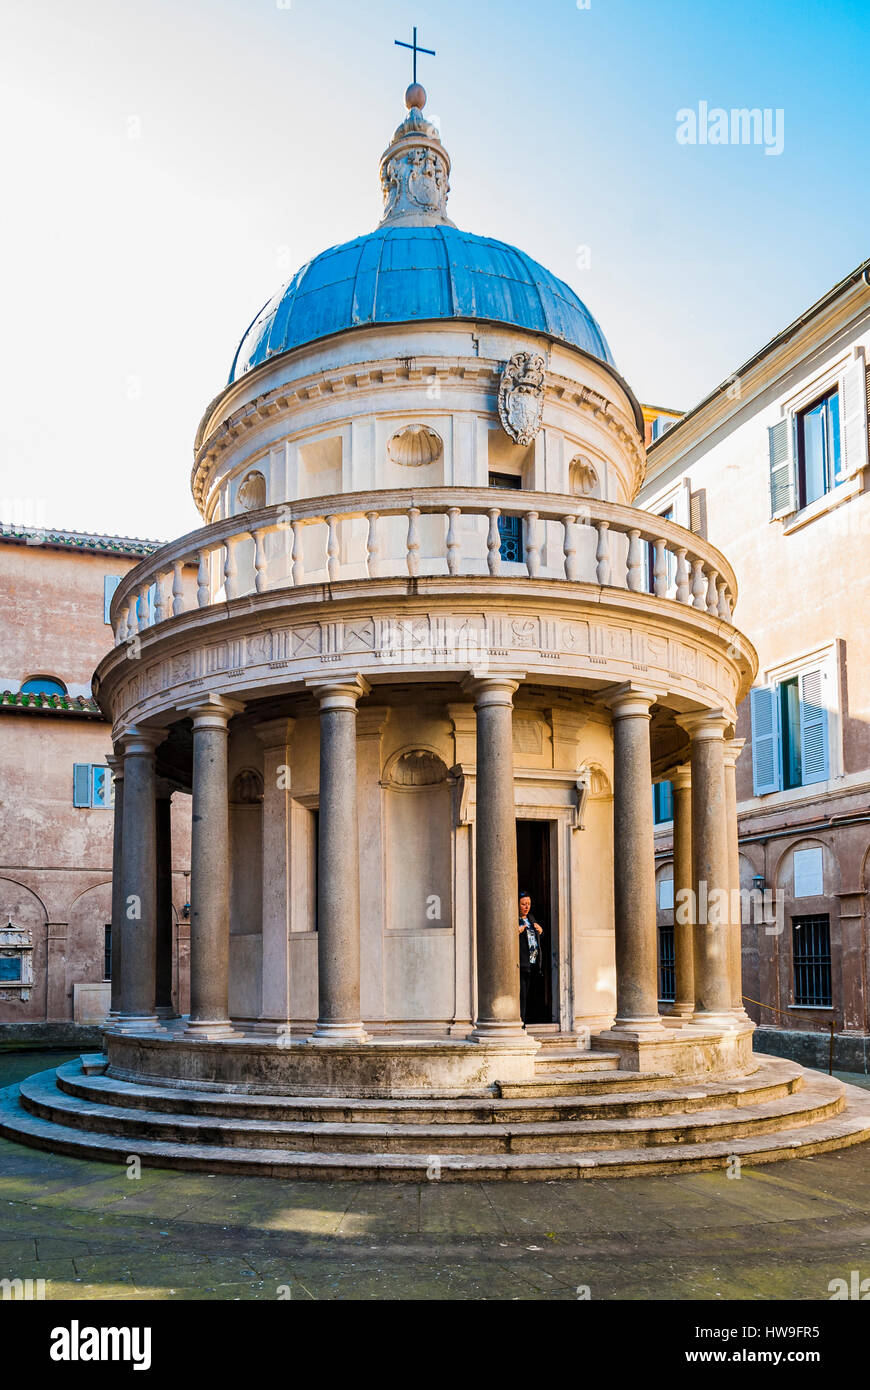 San Pietro in Montorio church, in its courtyard the Tempietto, a small commemorative martyrium built by Donato Bramante. Rome, Lazio, Italy, Europe. Stock Photo